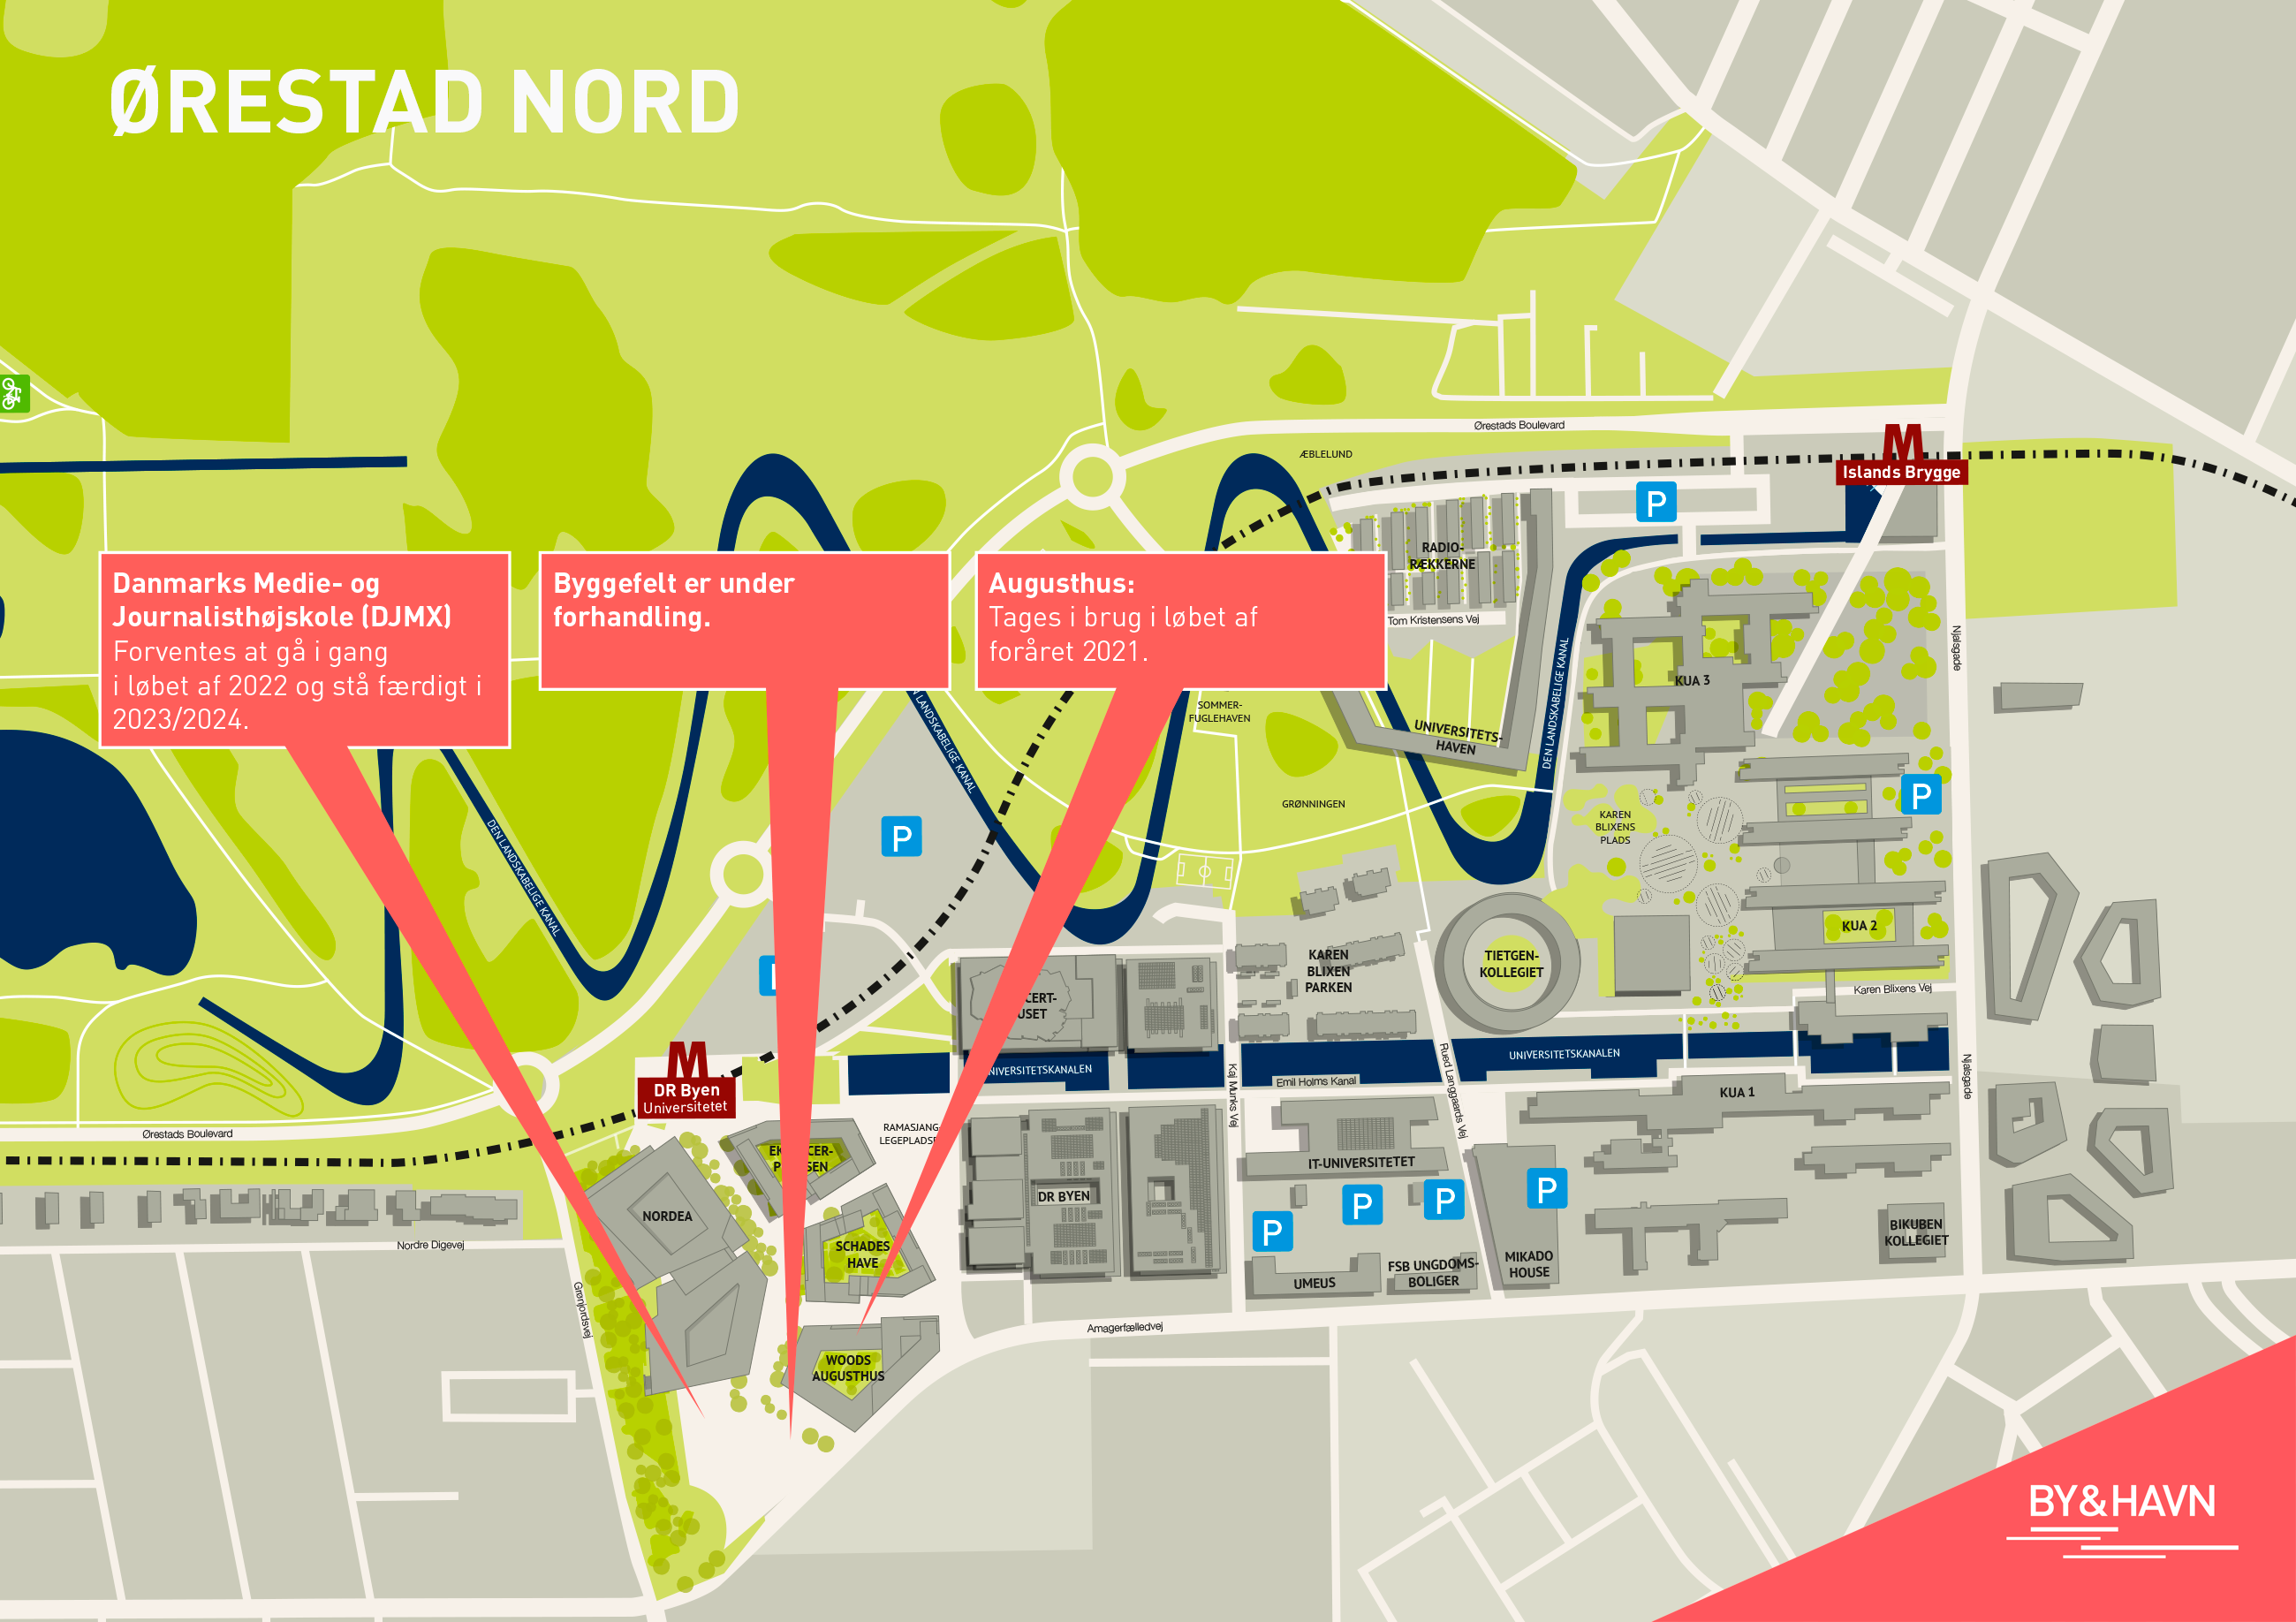 Kort over Ørestad Nord viser nuværende og fremtidig byggeaktivitet